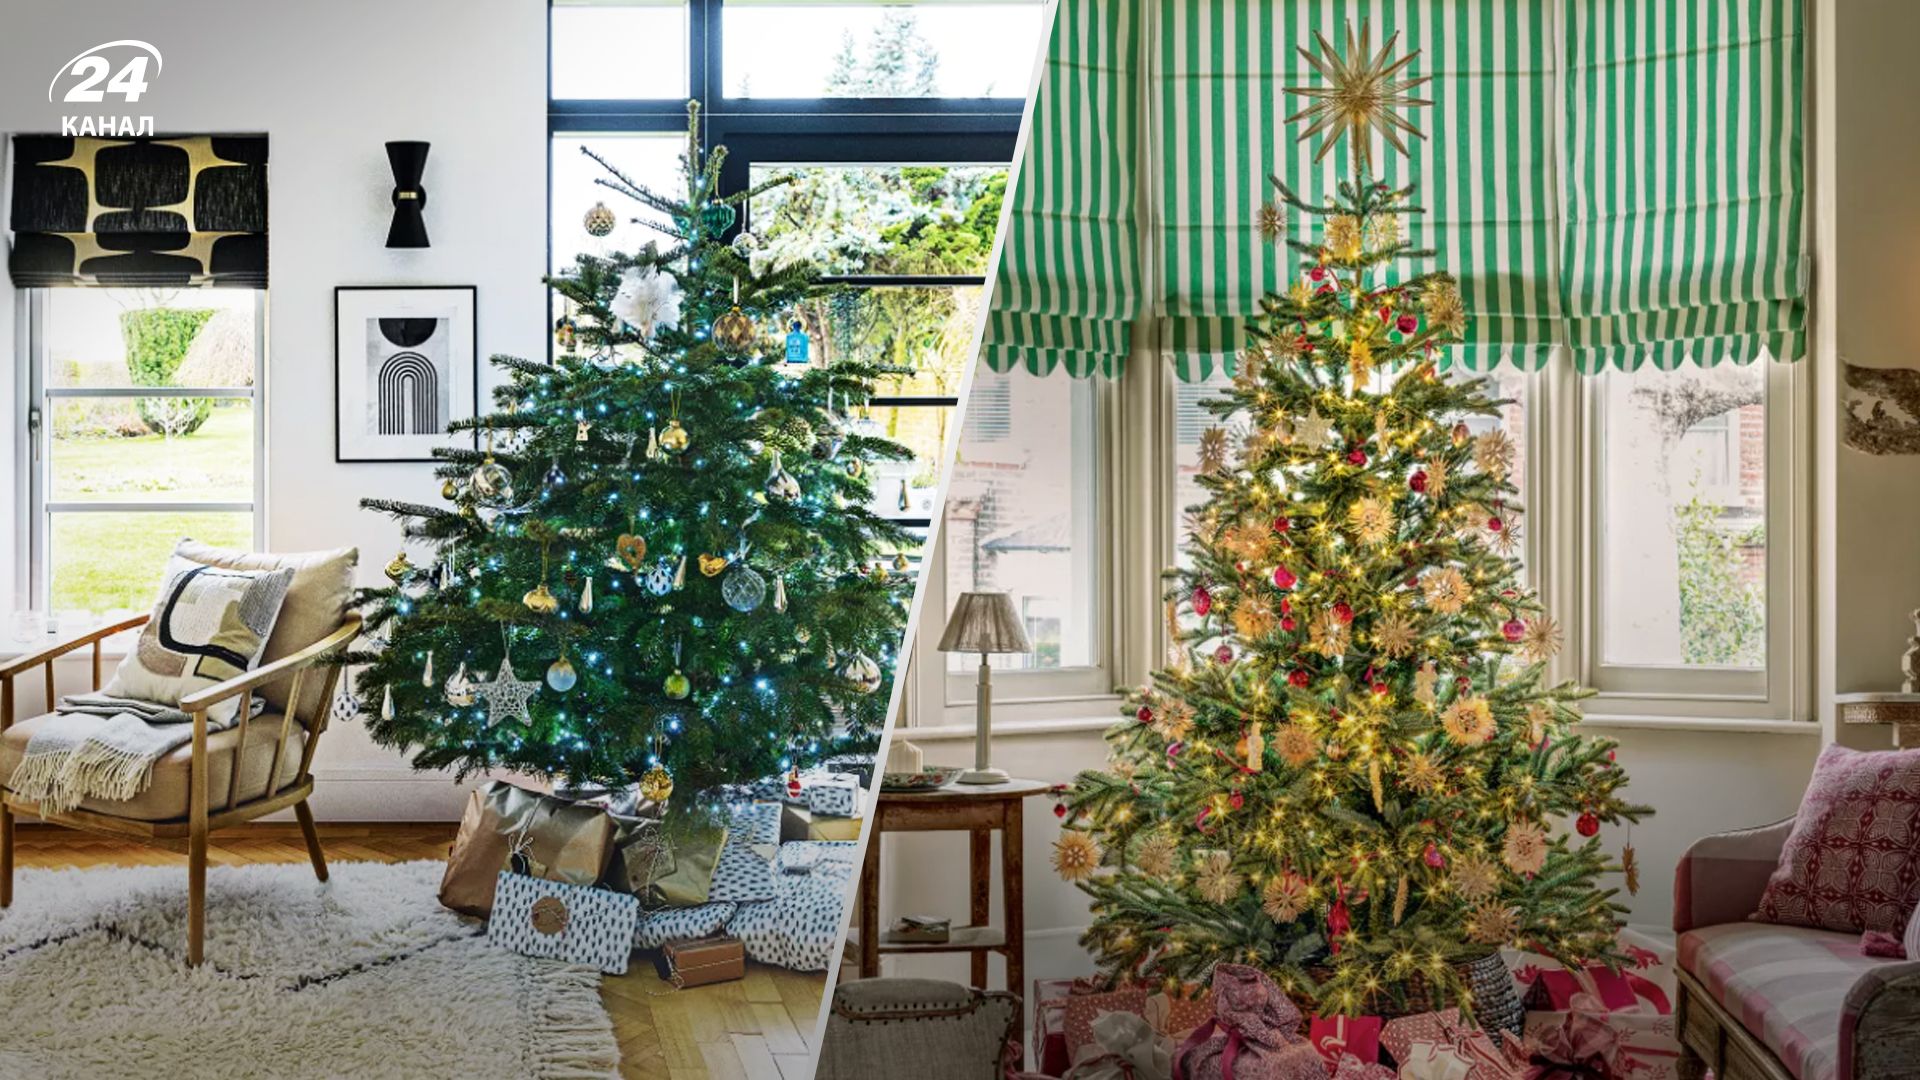 7 ошибок, которых следует избегать во время украшения новогодней елки - Недвижимость